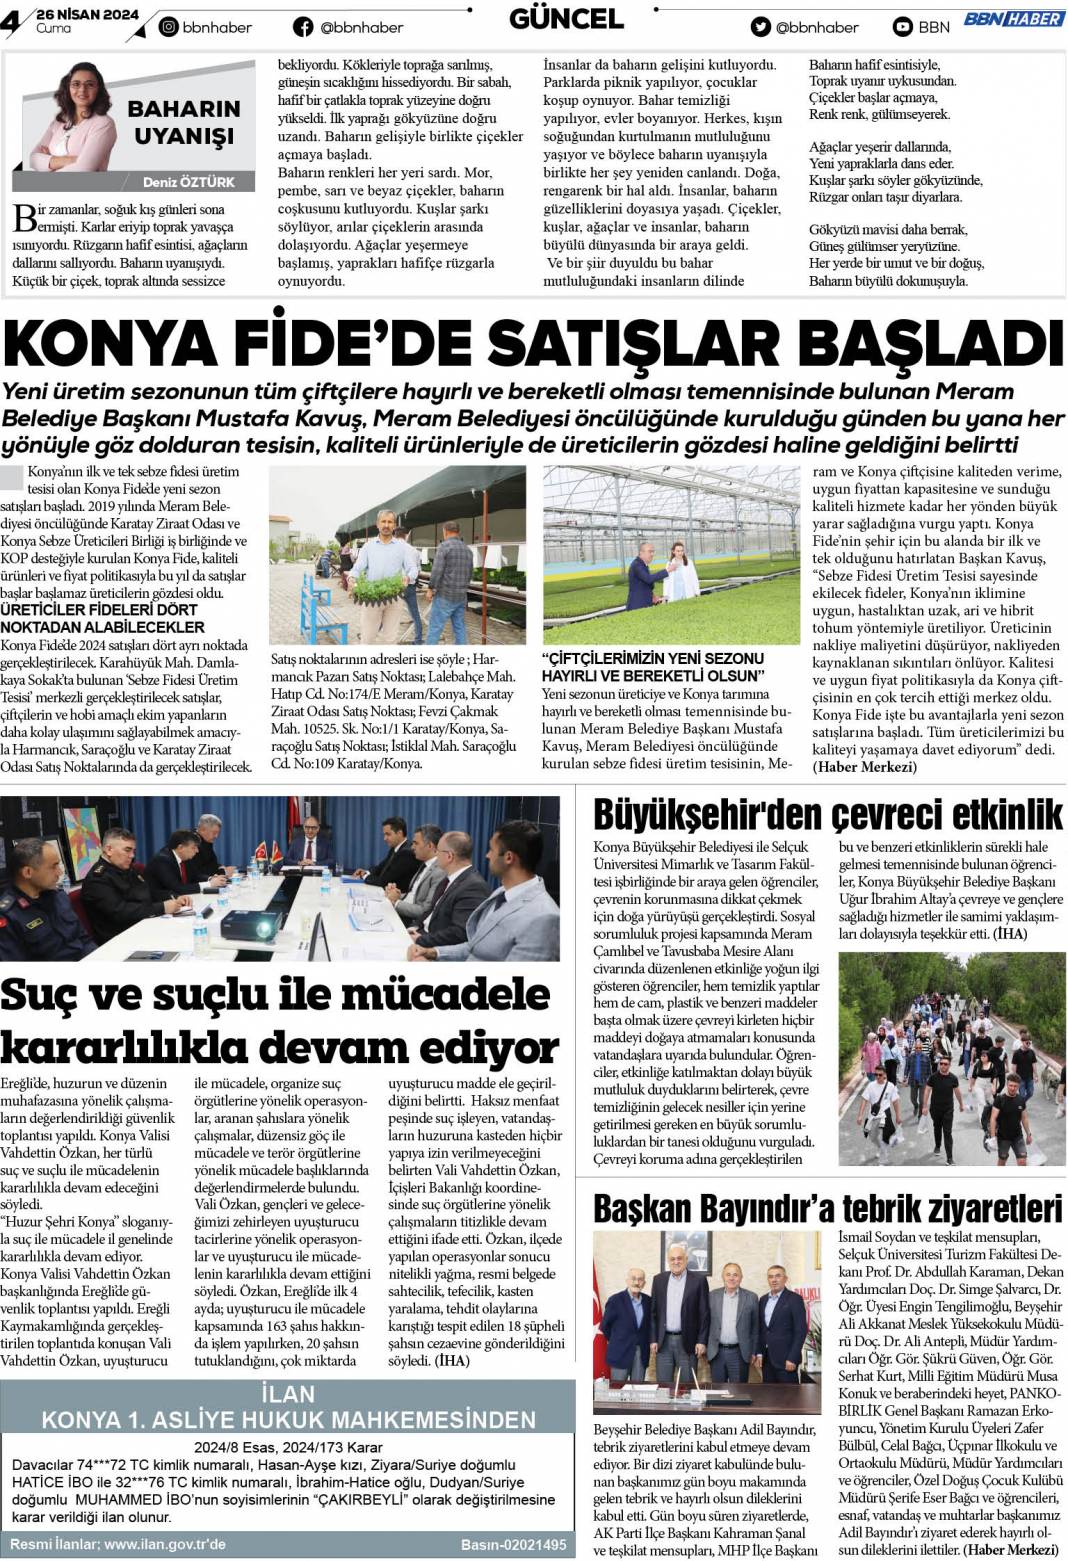 20 Eylül 2022 Salı BBN Haber e Gazete 4